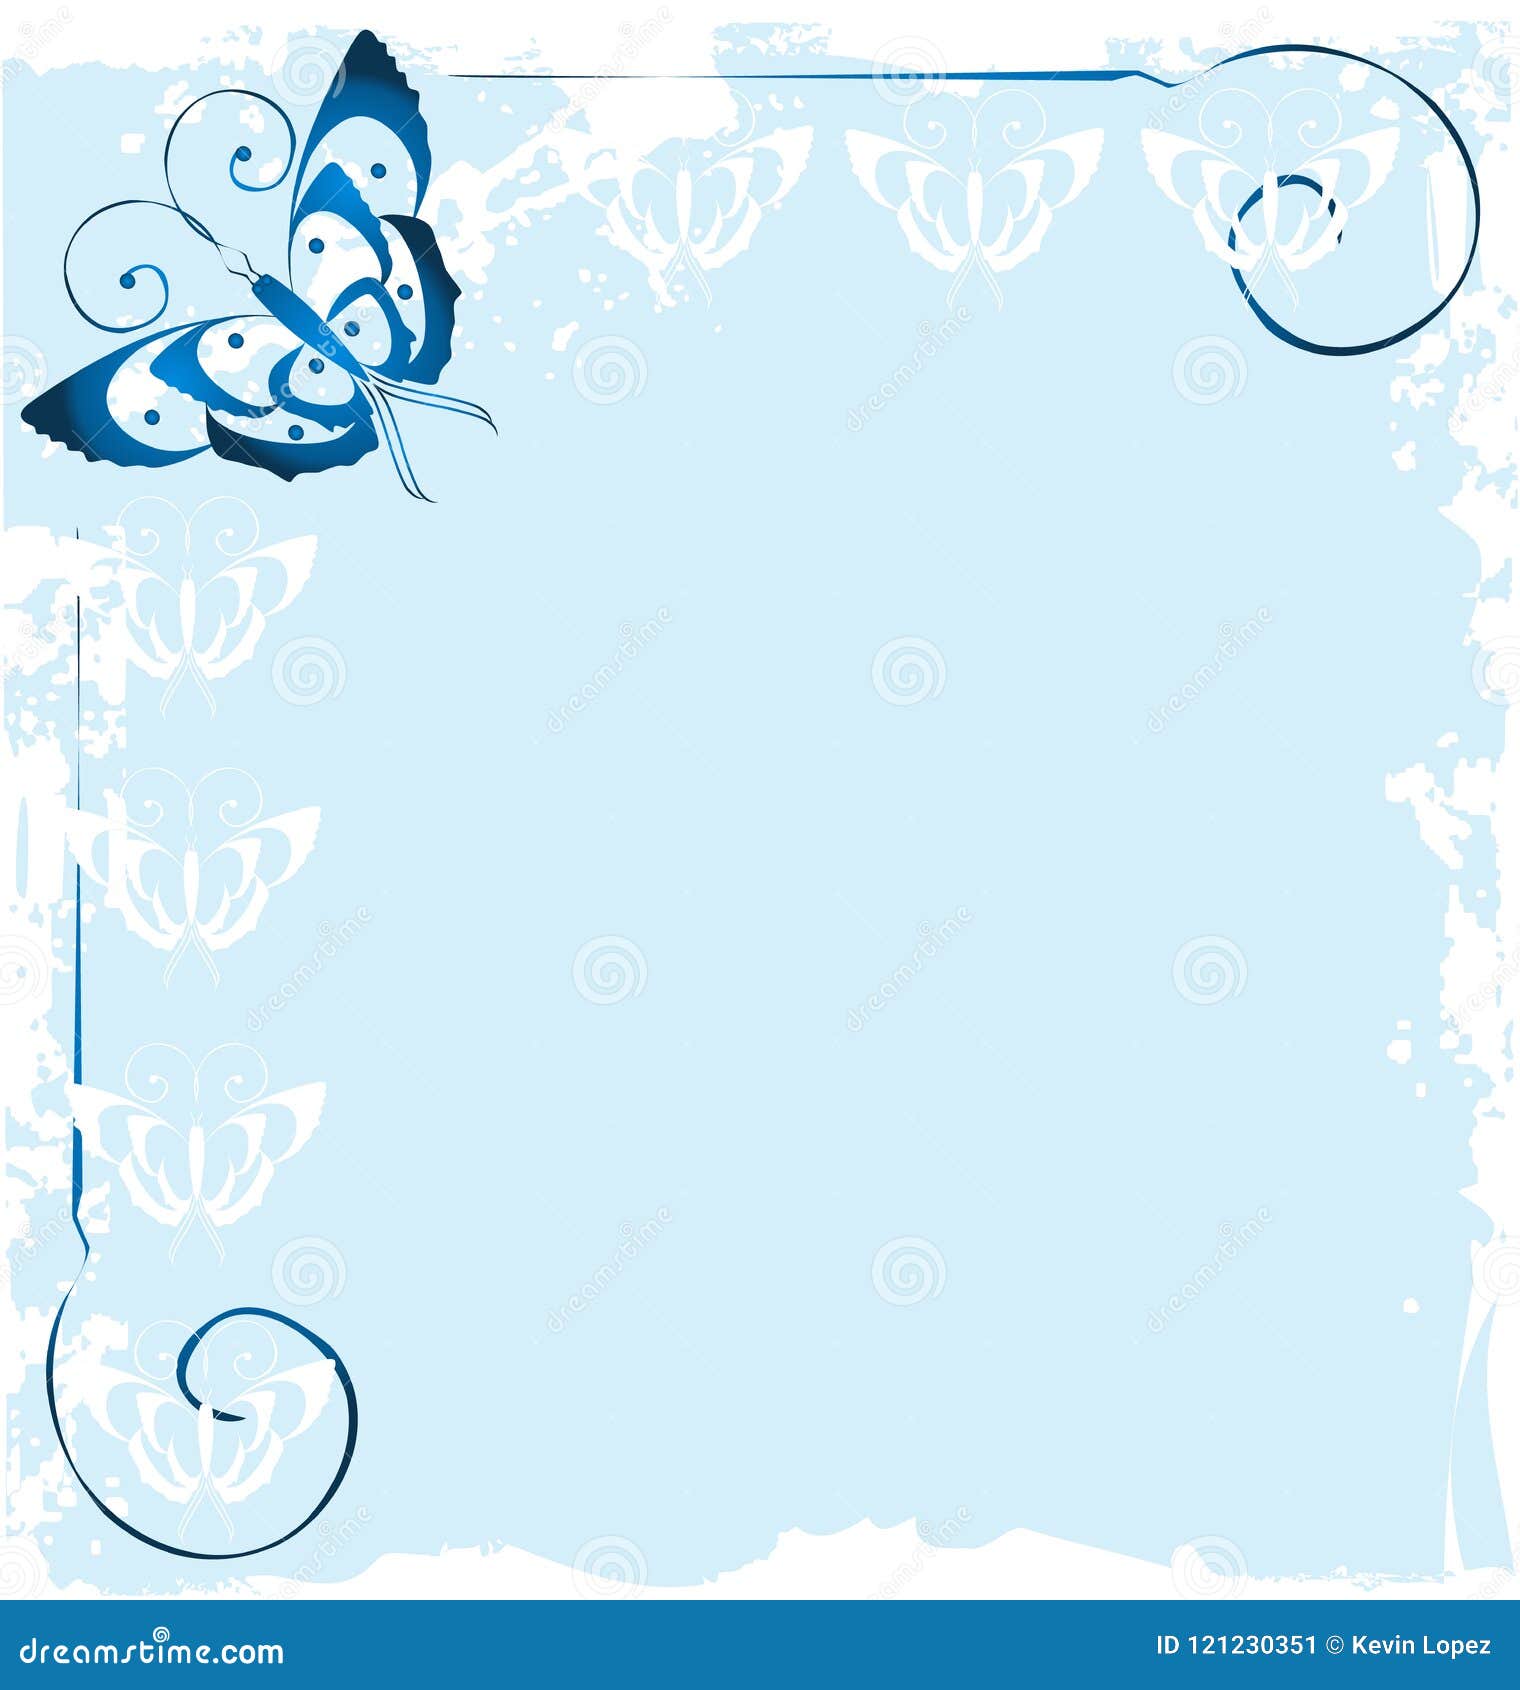 Khung hình nền bướm xanh thật sự tạo nên một không gian tươi mới và sảng khoái. Những bông hoa bướm trên nền xanh dịu mắt sẽ giúp bạn thư giãn ở bất cứ đâu bạn muốn. 